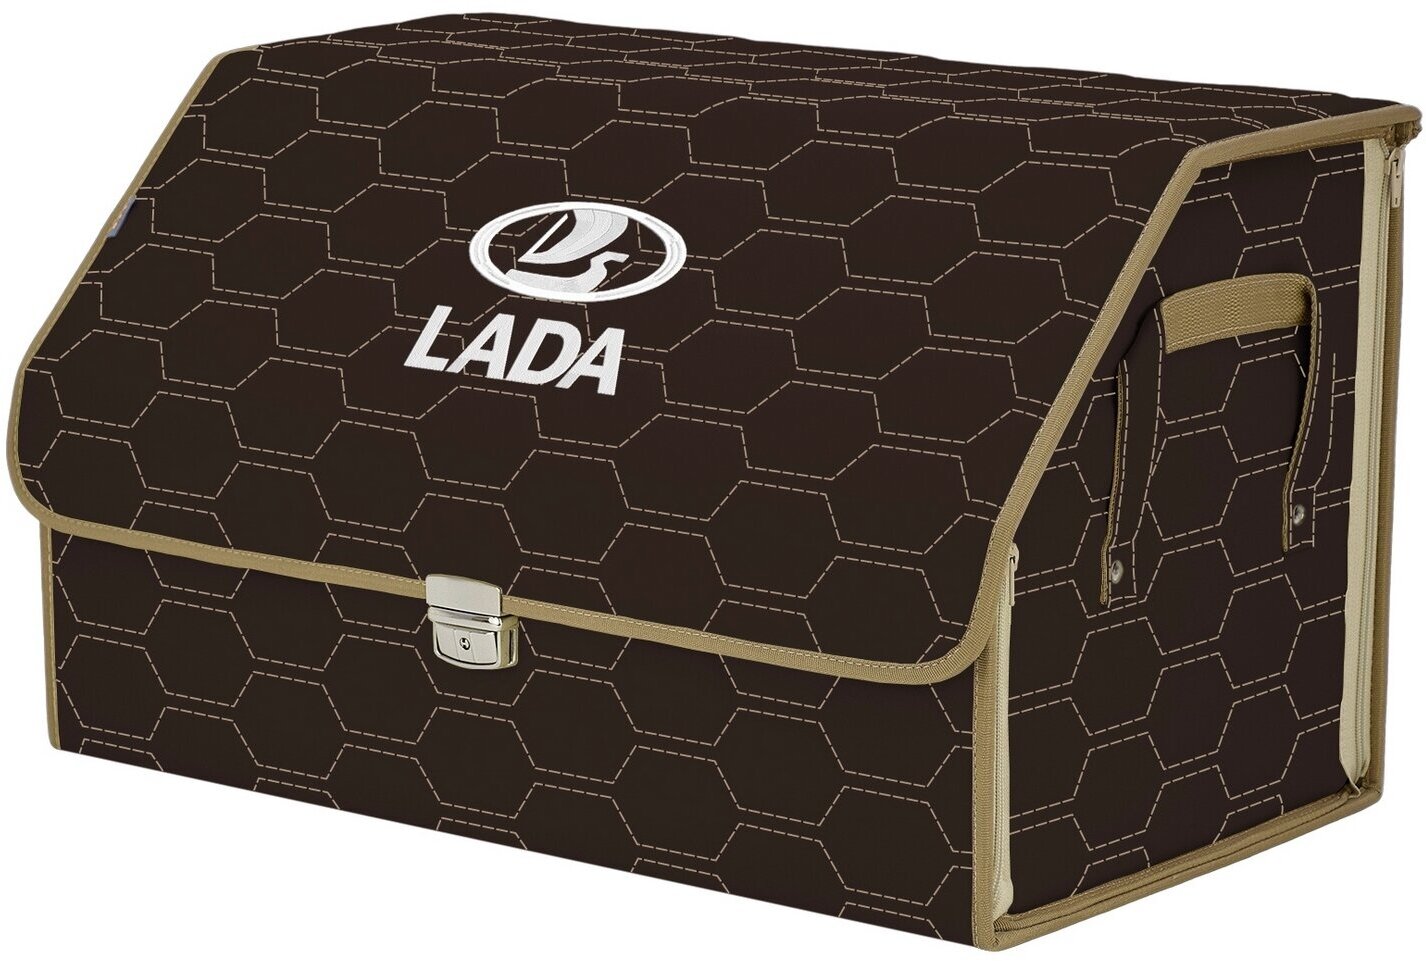 Органайзер-саквояж в багажник "Союз Премиум" (размер XL). Цвет: коричневый с бежевой прострочкой Соты и вышивкой LADA (лада).